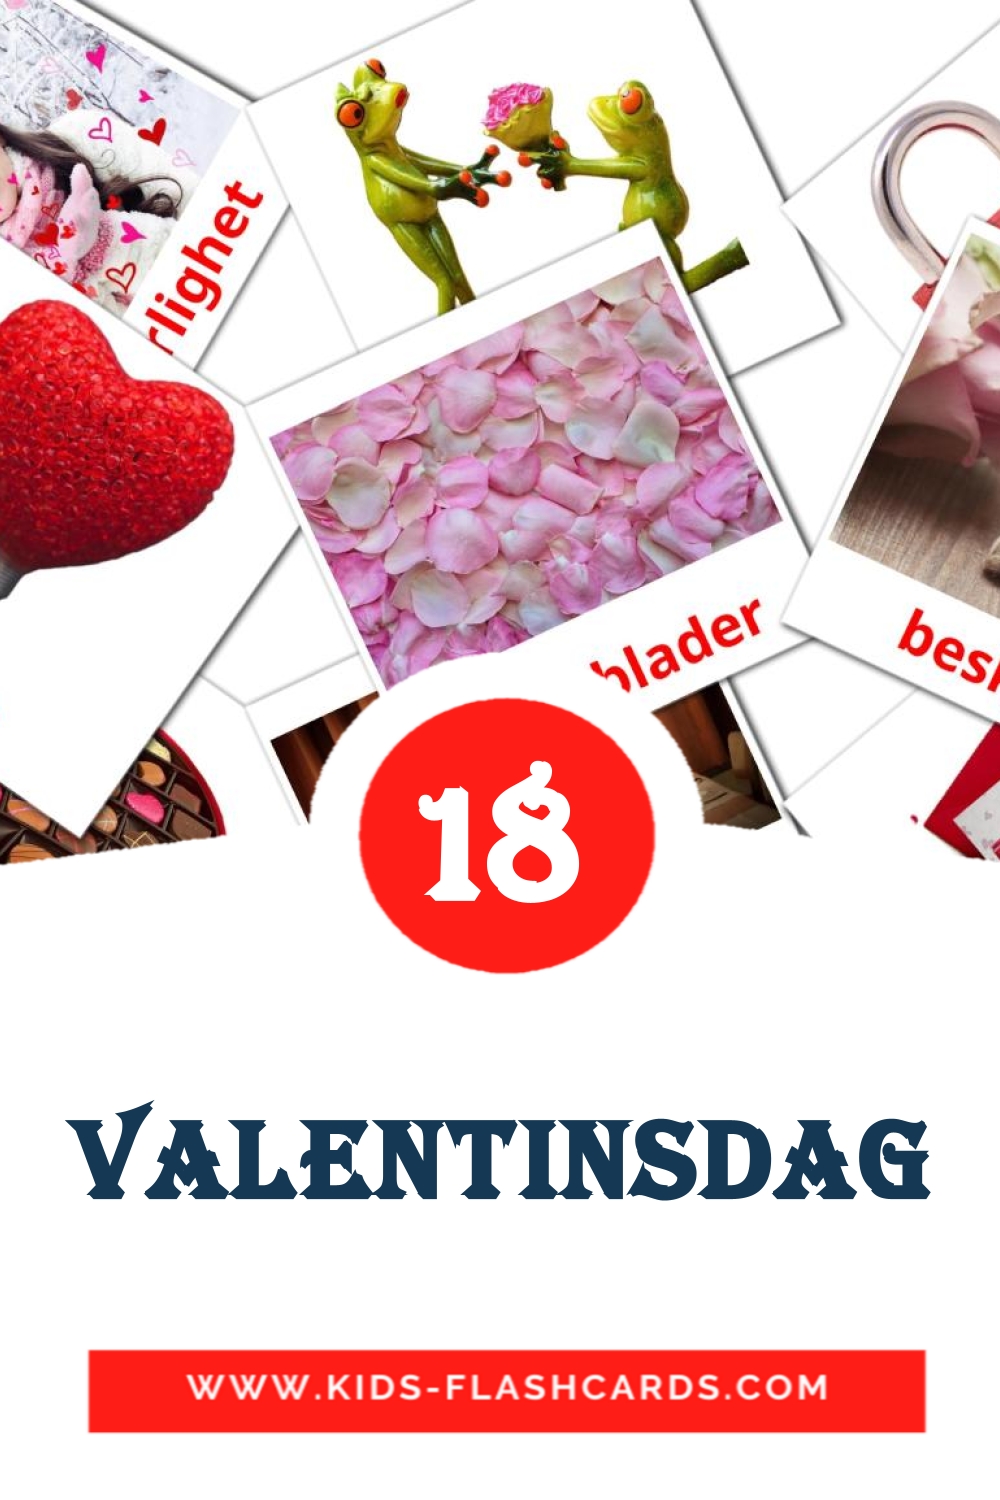 18 tarjetas didacticas de Valentinsdag para el jardín de infancia en noruego